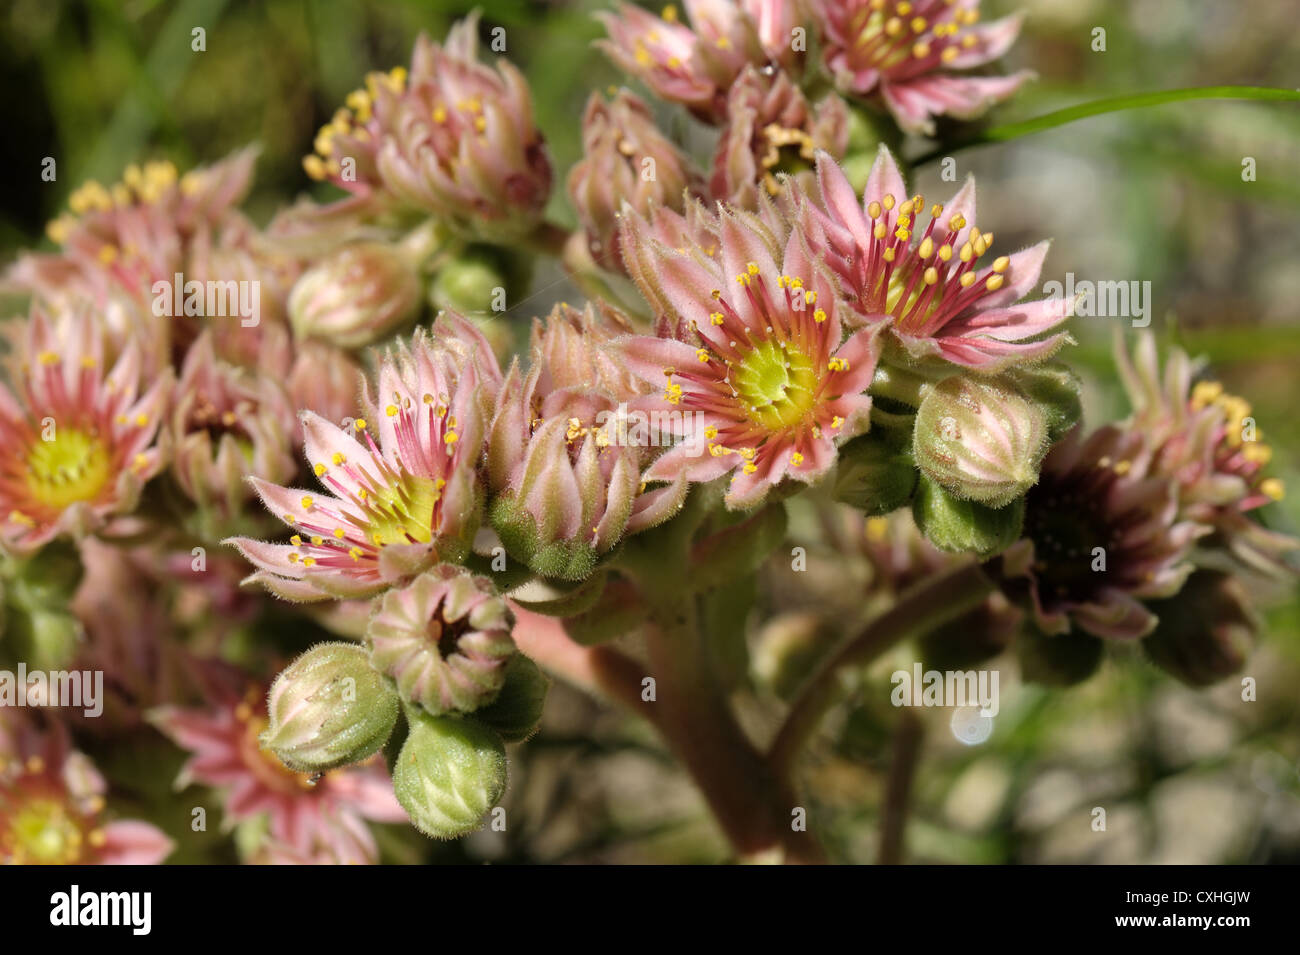 Houseleek (Sempervivum arachnoideum) flowers Stock Photo